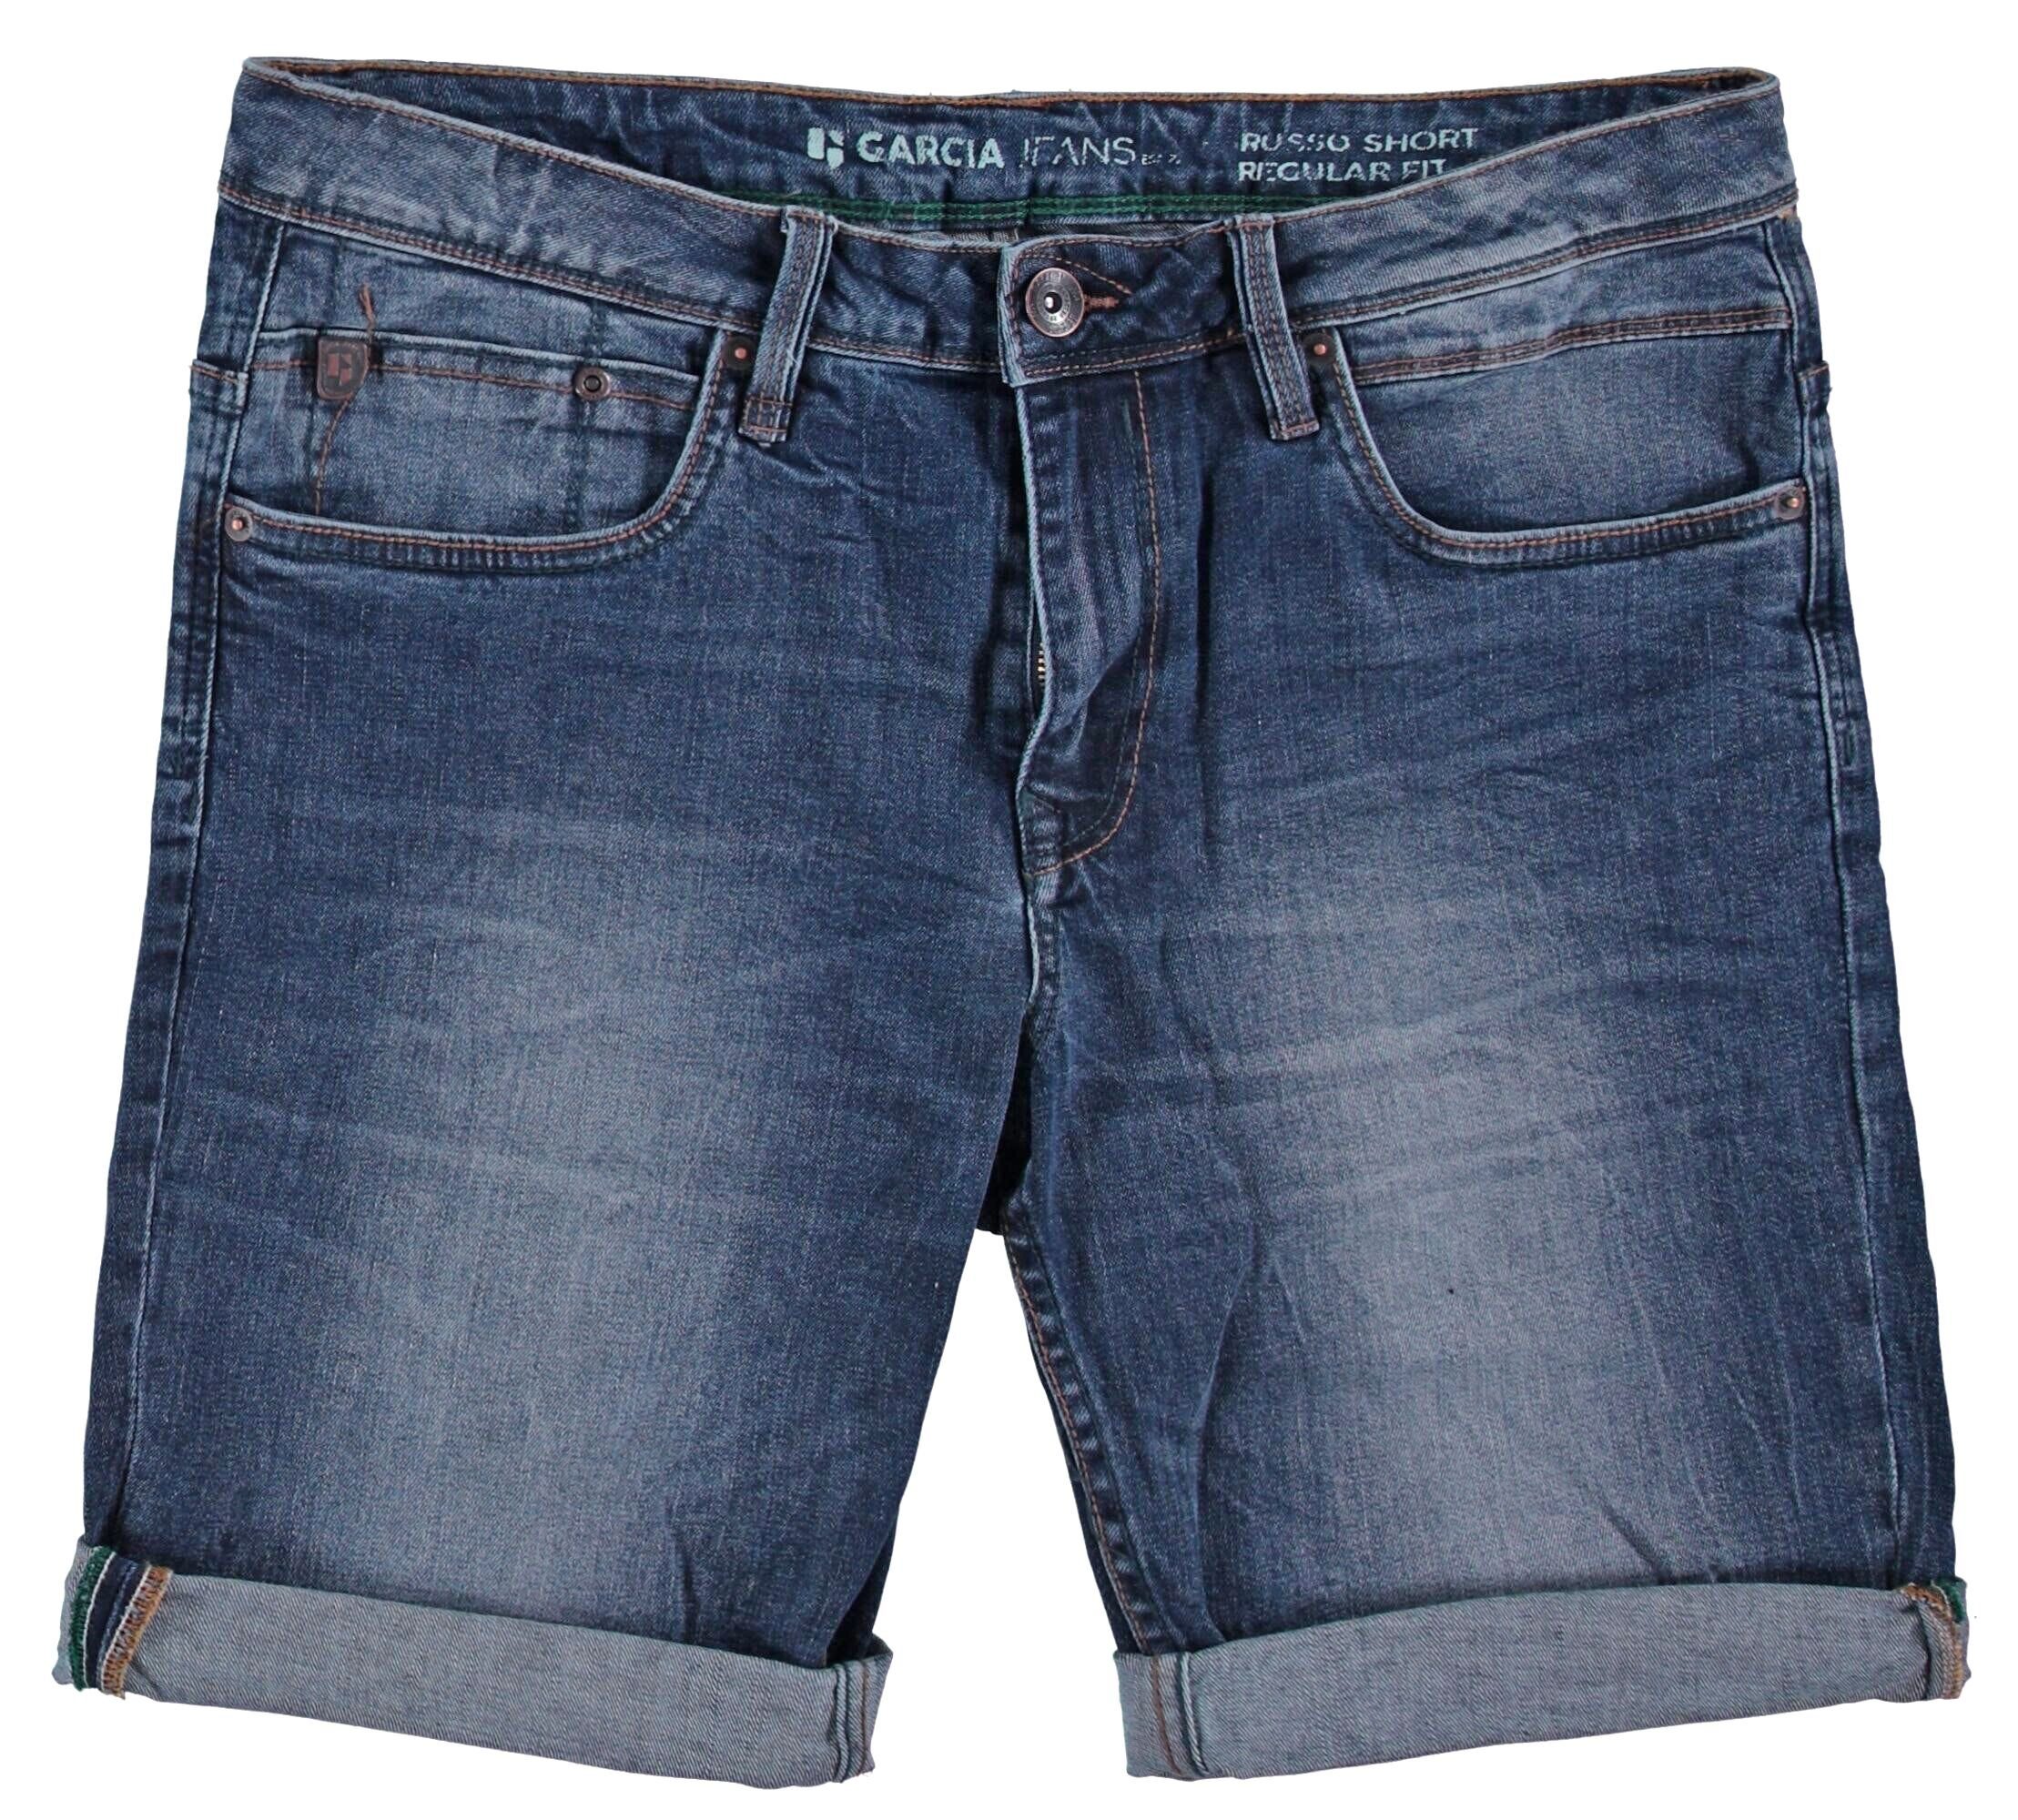 GARCIA JEANS 5-Pocket-Jeans GARCIA RUSSO SHORT med used blue 615.1456 -  Acqua